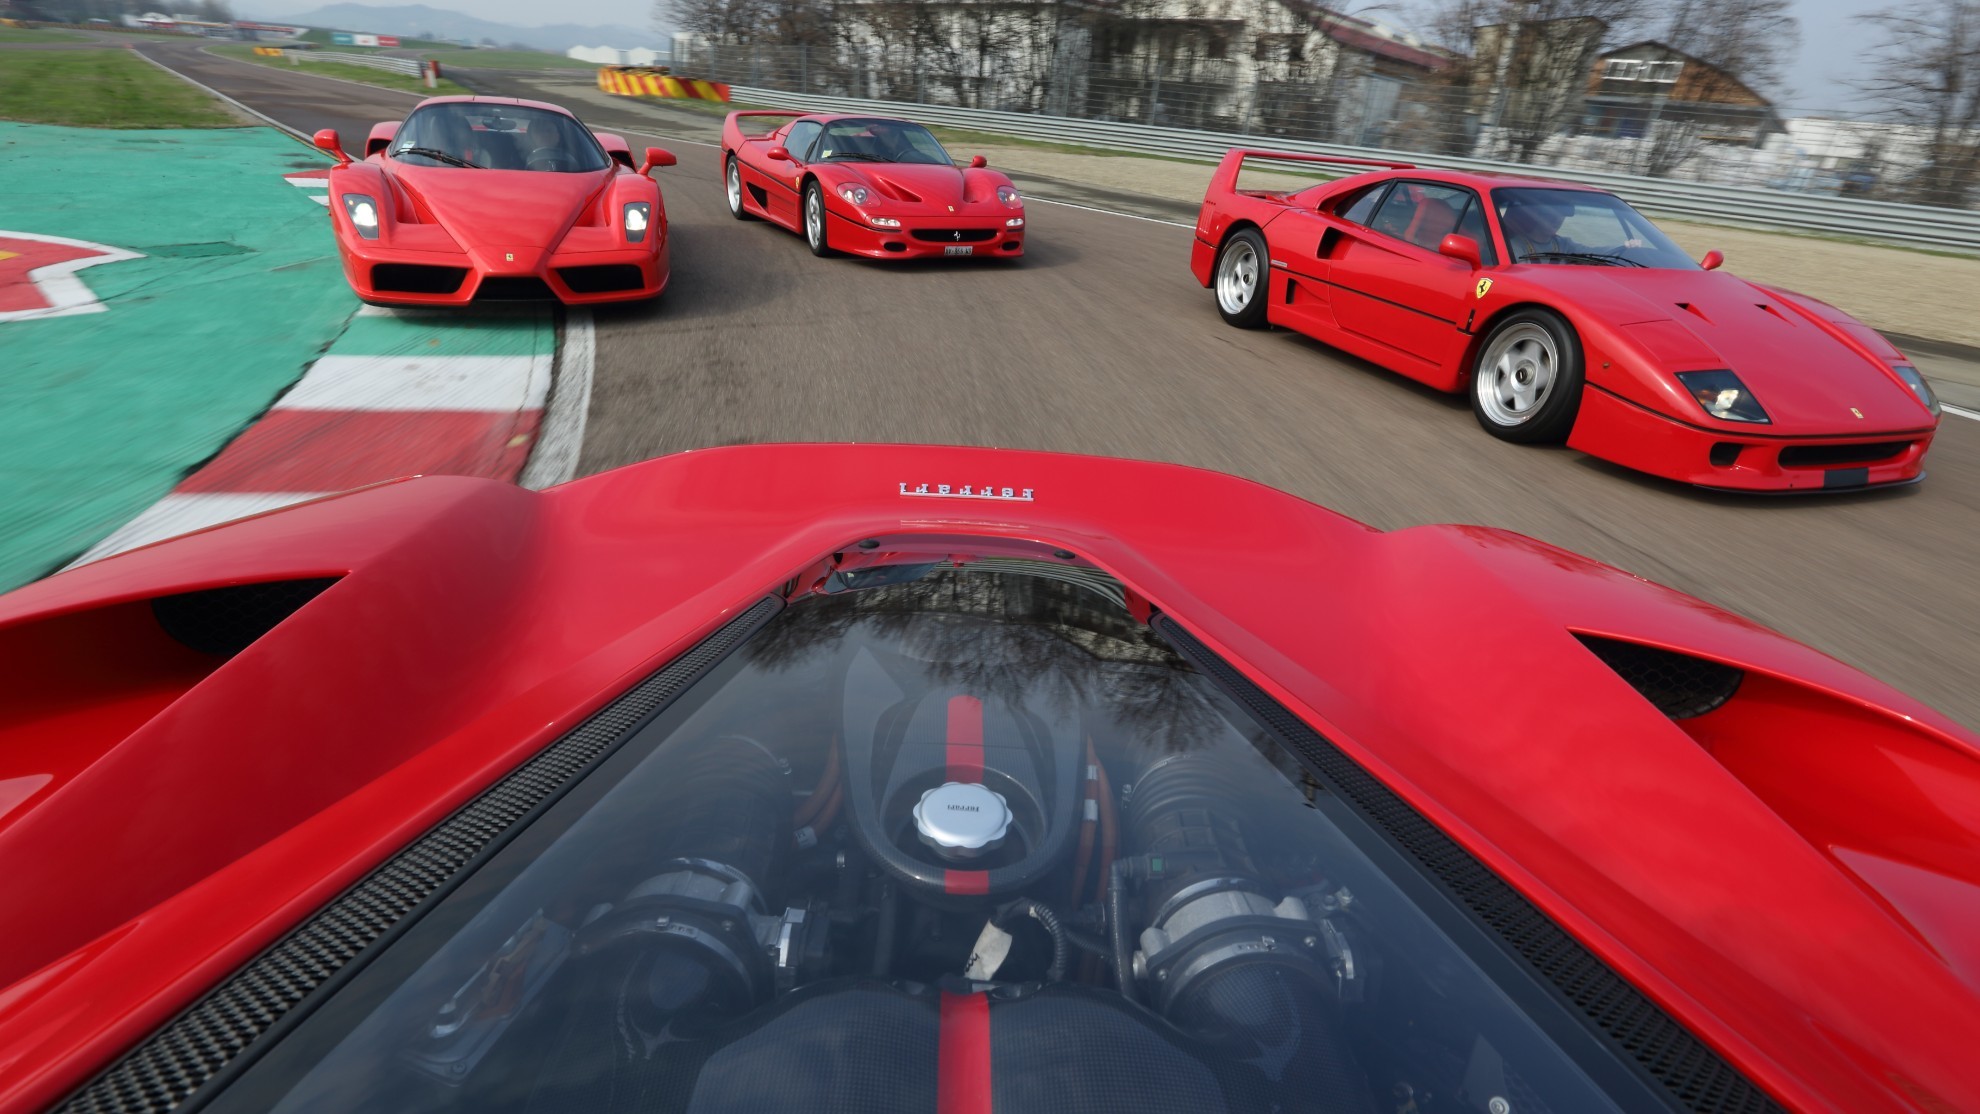 Ferrari - Hall of fame - salon de la fama - LaFerrari - F40 - F50 - encuesta - Enzo - 250 GTO